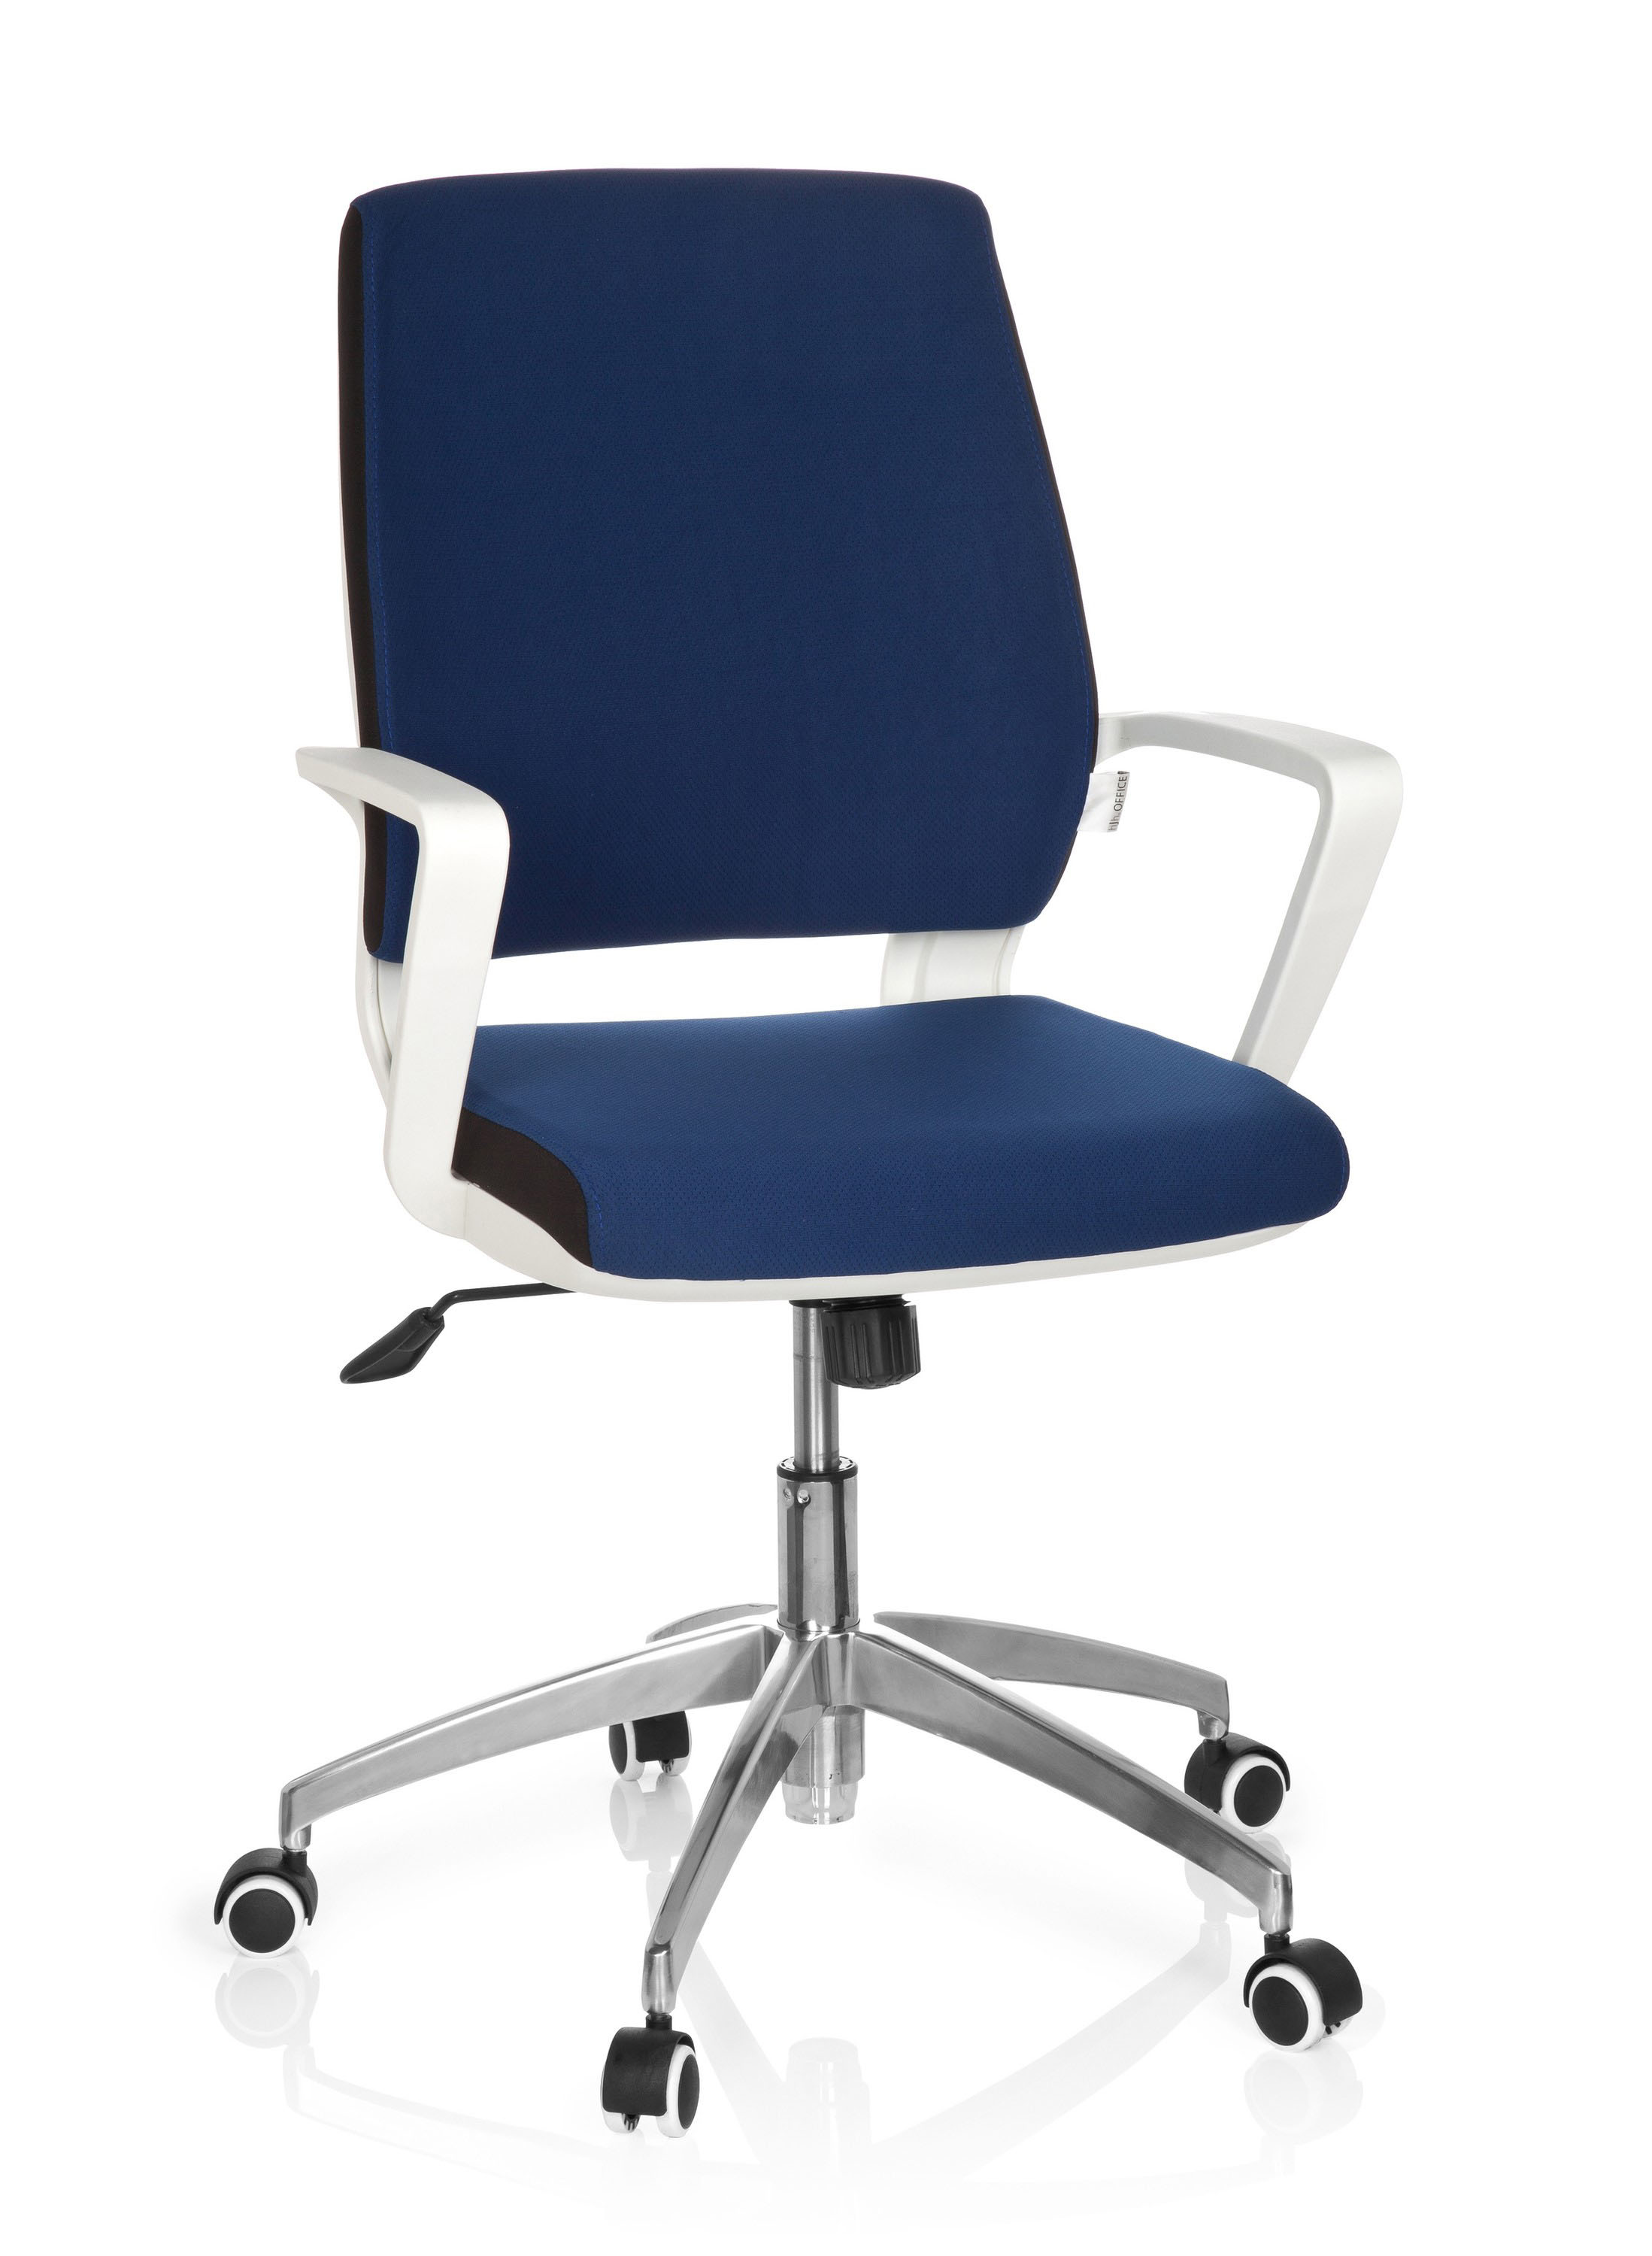 Bürostuhl / Drehstuhl, 45-55 cm Sitzhöhe mit ergonomisch geformter Lehne + Armlehnen, Farbe blau